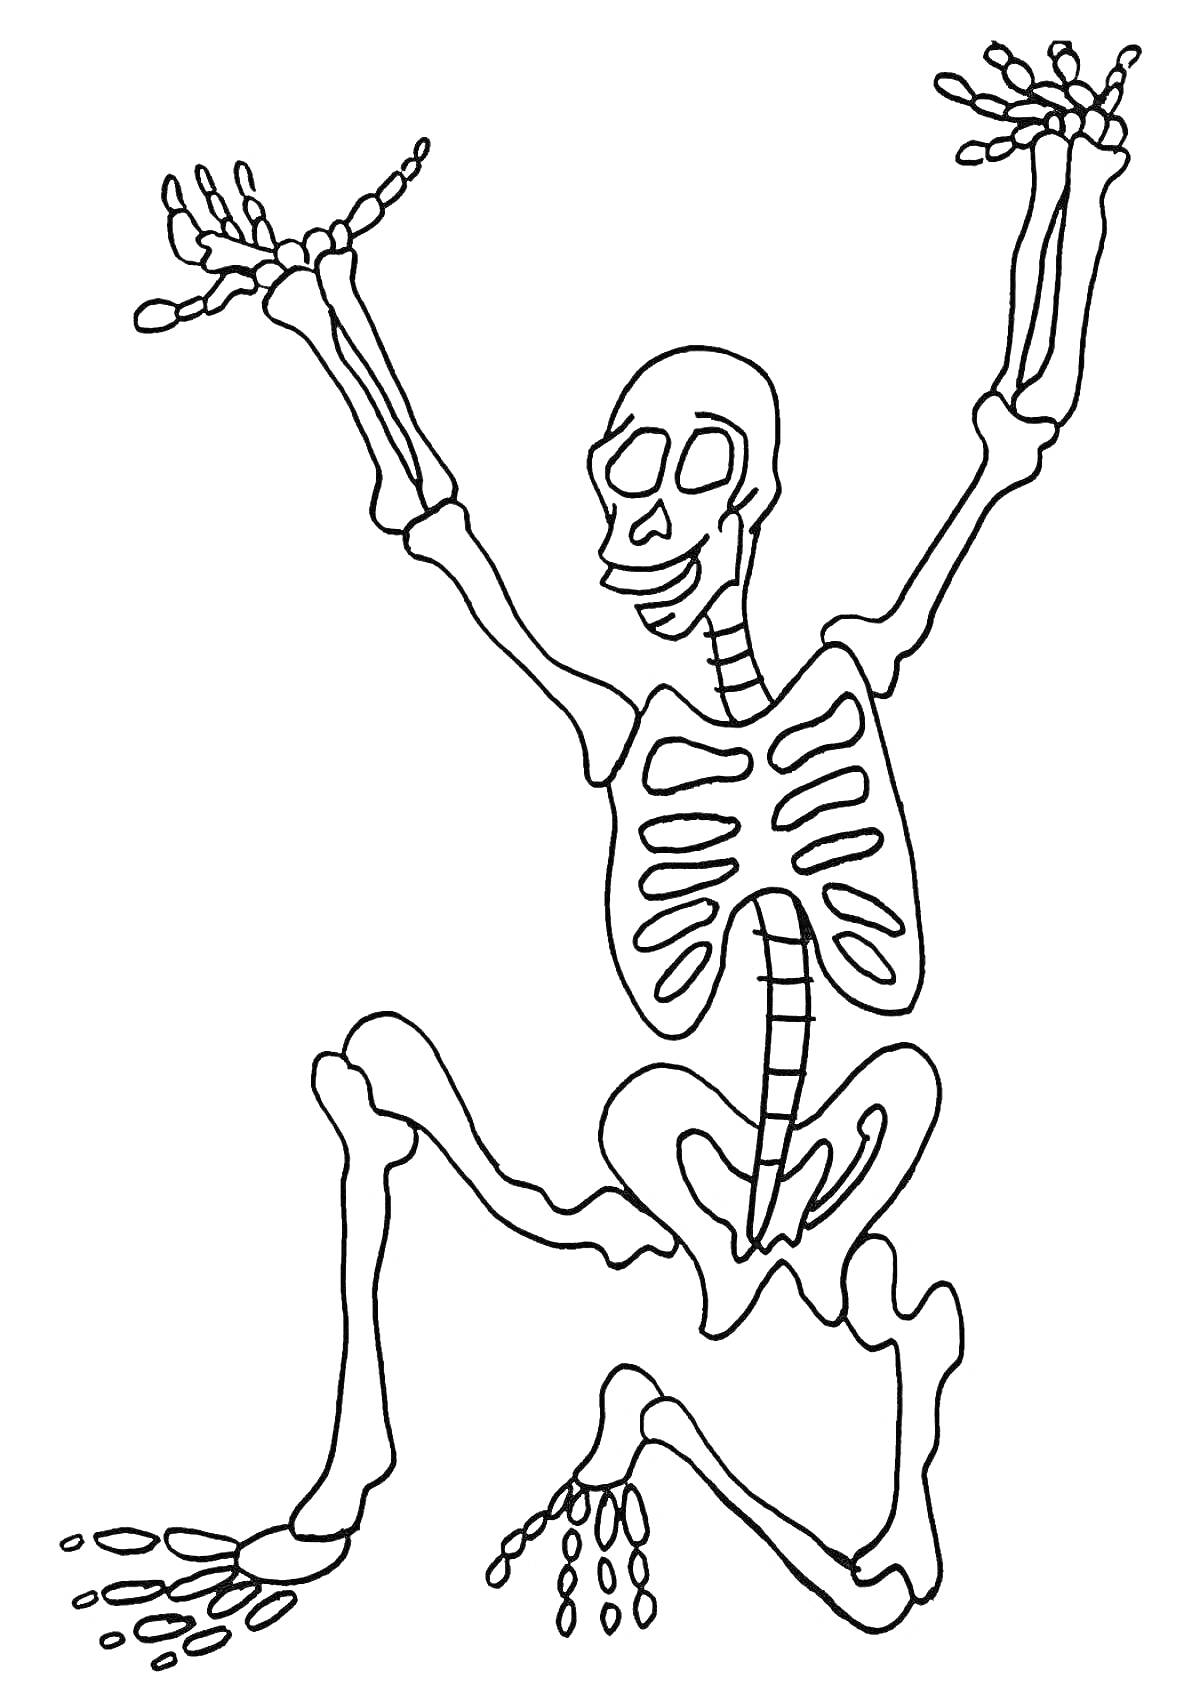 Раскраска Скелет с поднятыми руками и ногами